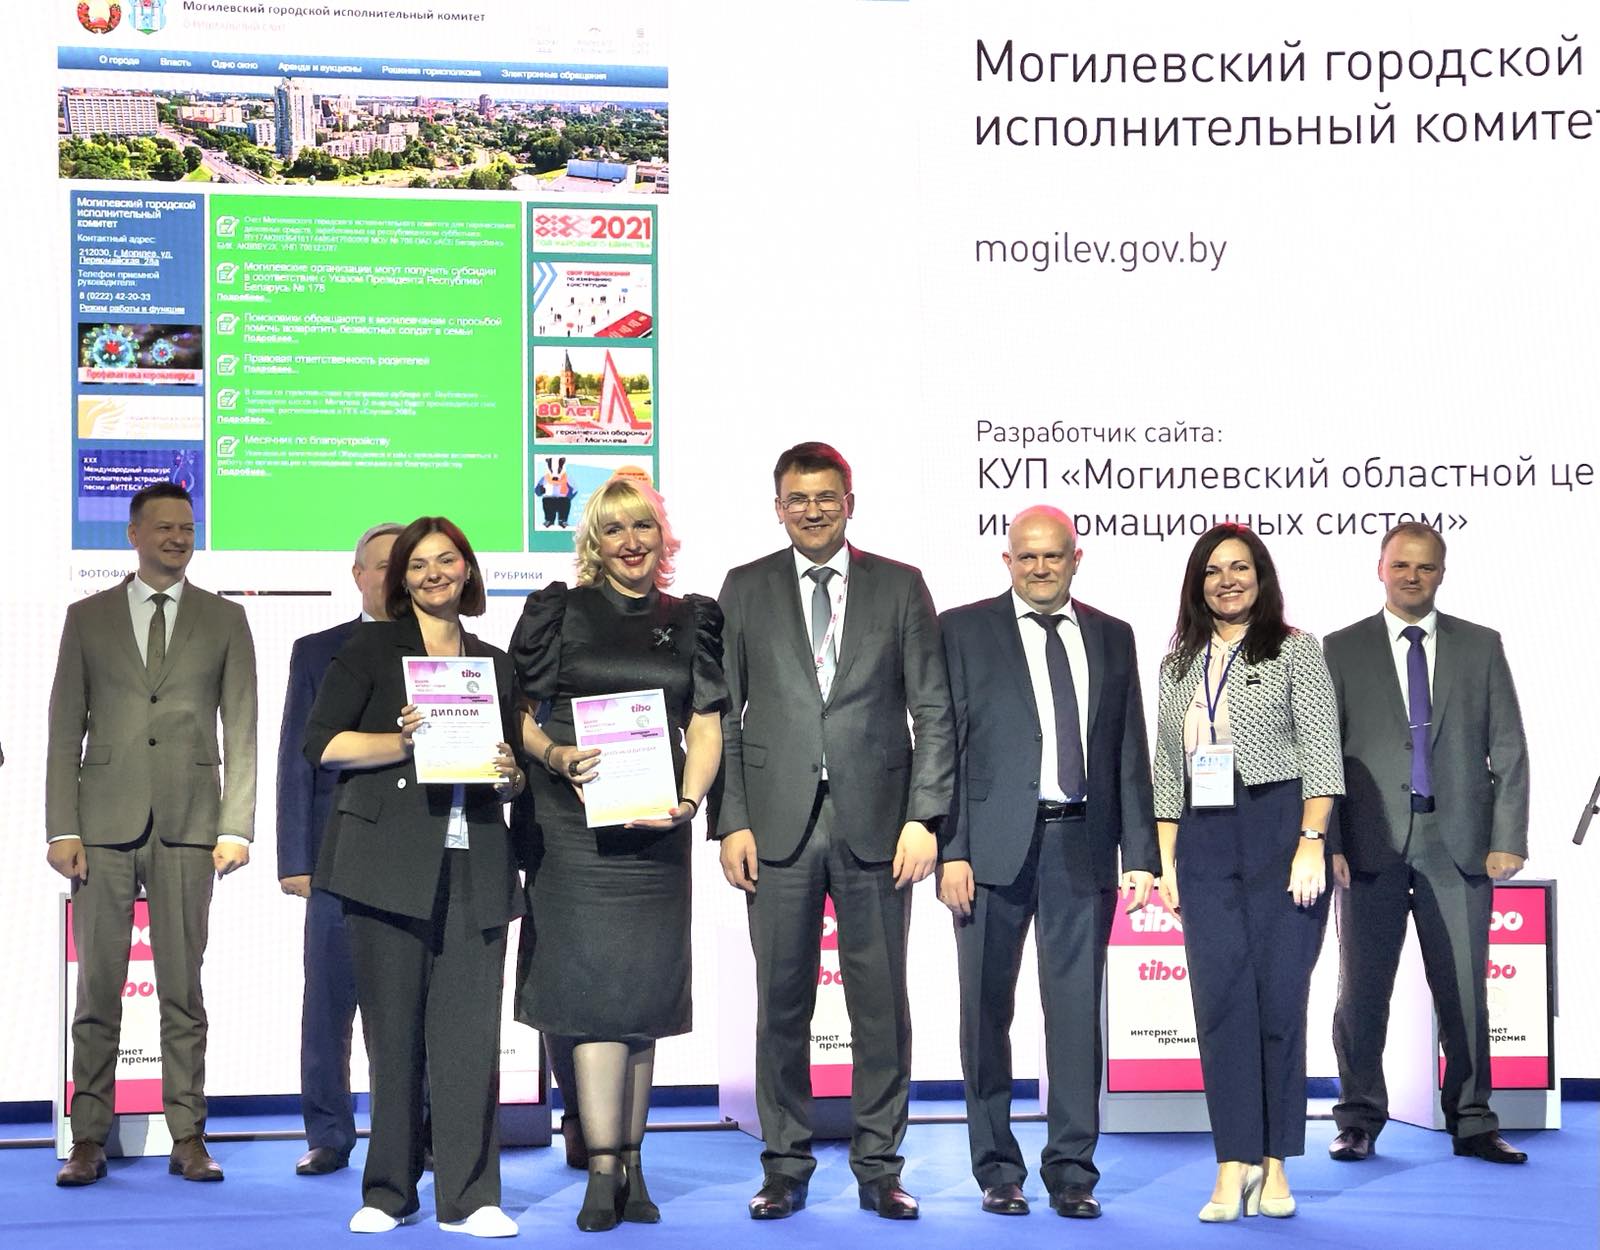 Сайт Могилевского горисполкома удостоен
специального диплома по итогам конкурса «Интернет-премия «ТИБО-2021»